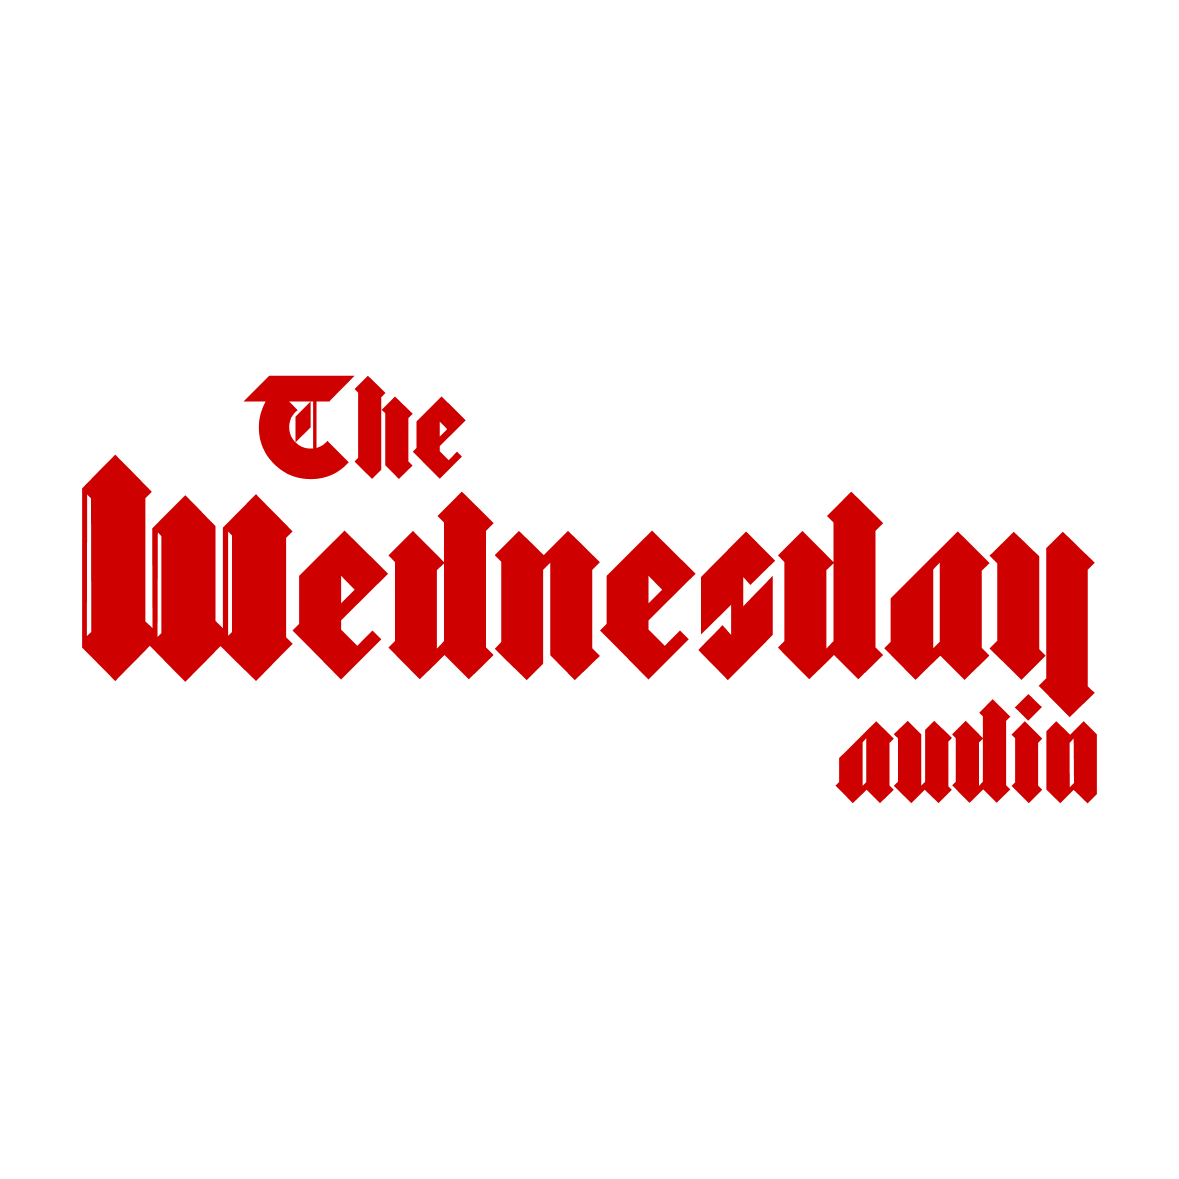 The Wednesday Audio